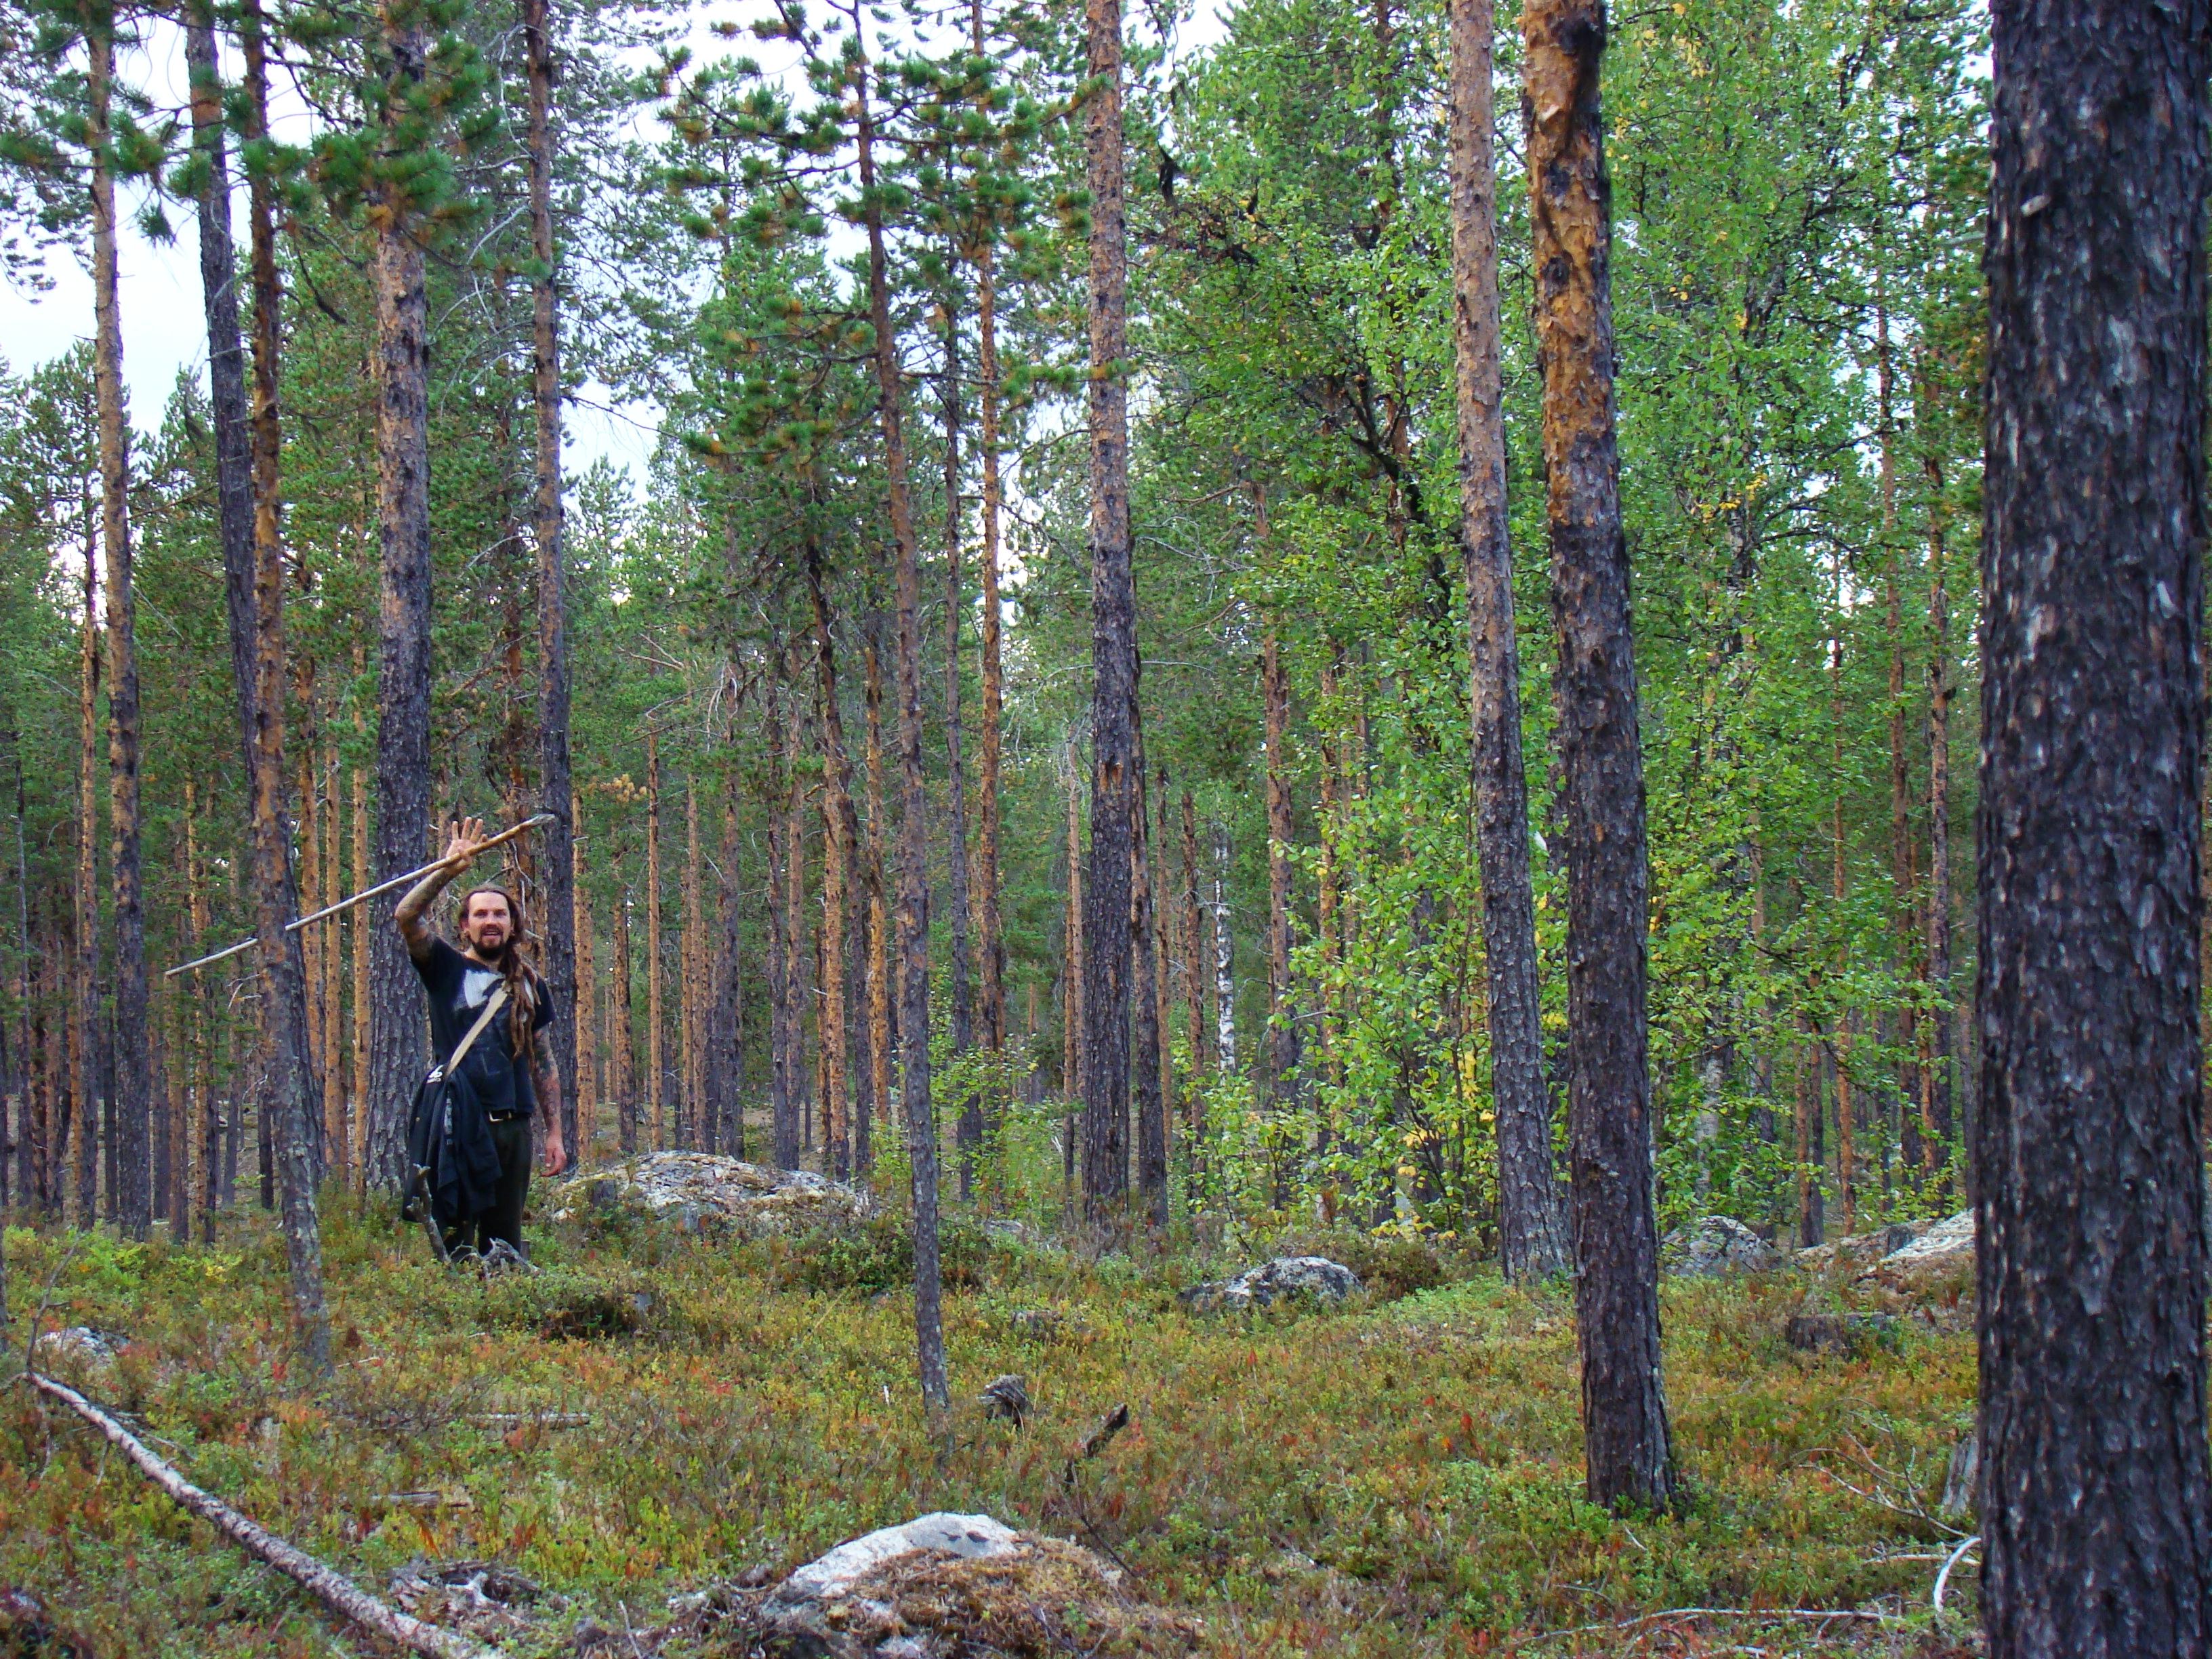 

Christian Lindenthaler på besök i Sverige. Bara genom att använda all kunskap man har skaffat sig, träna och göra erfarenheter, kan man en dag uppnå visdom och se den grundläggande sanningen om överlevnad, säger han. (Foto: Sarah Reh)                                                                                        